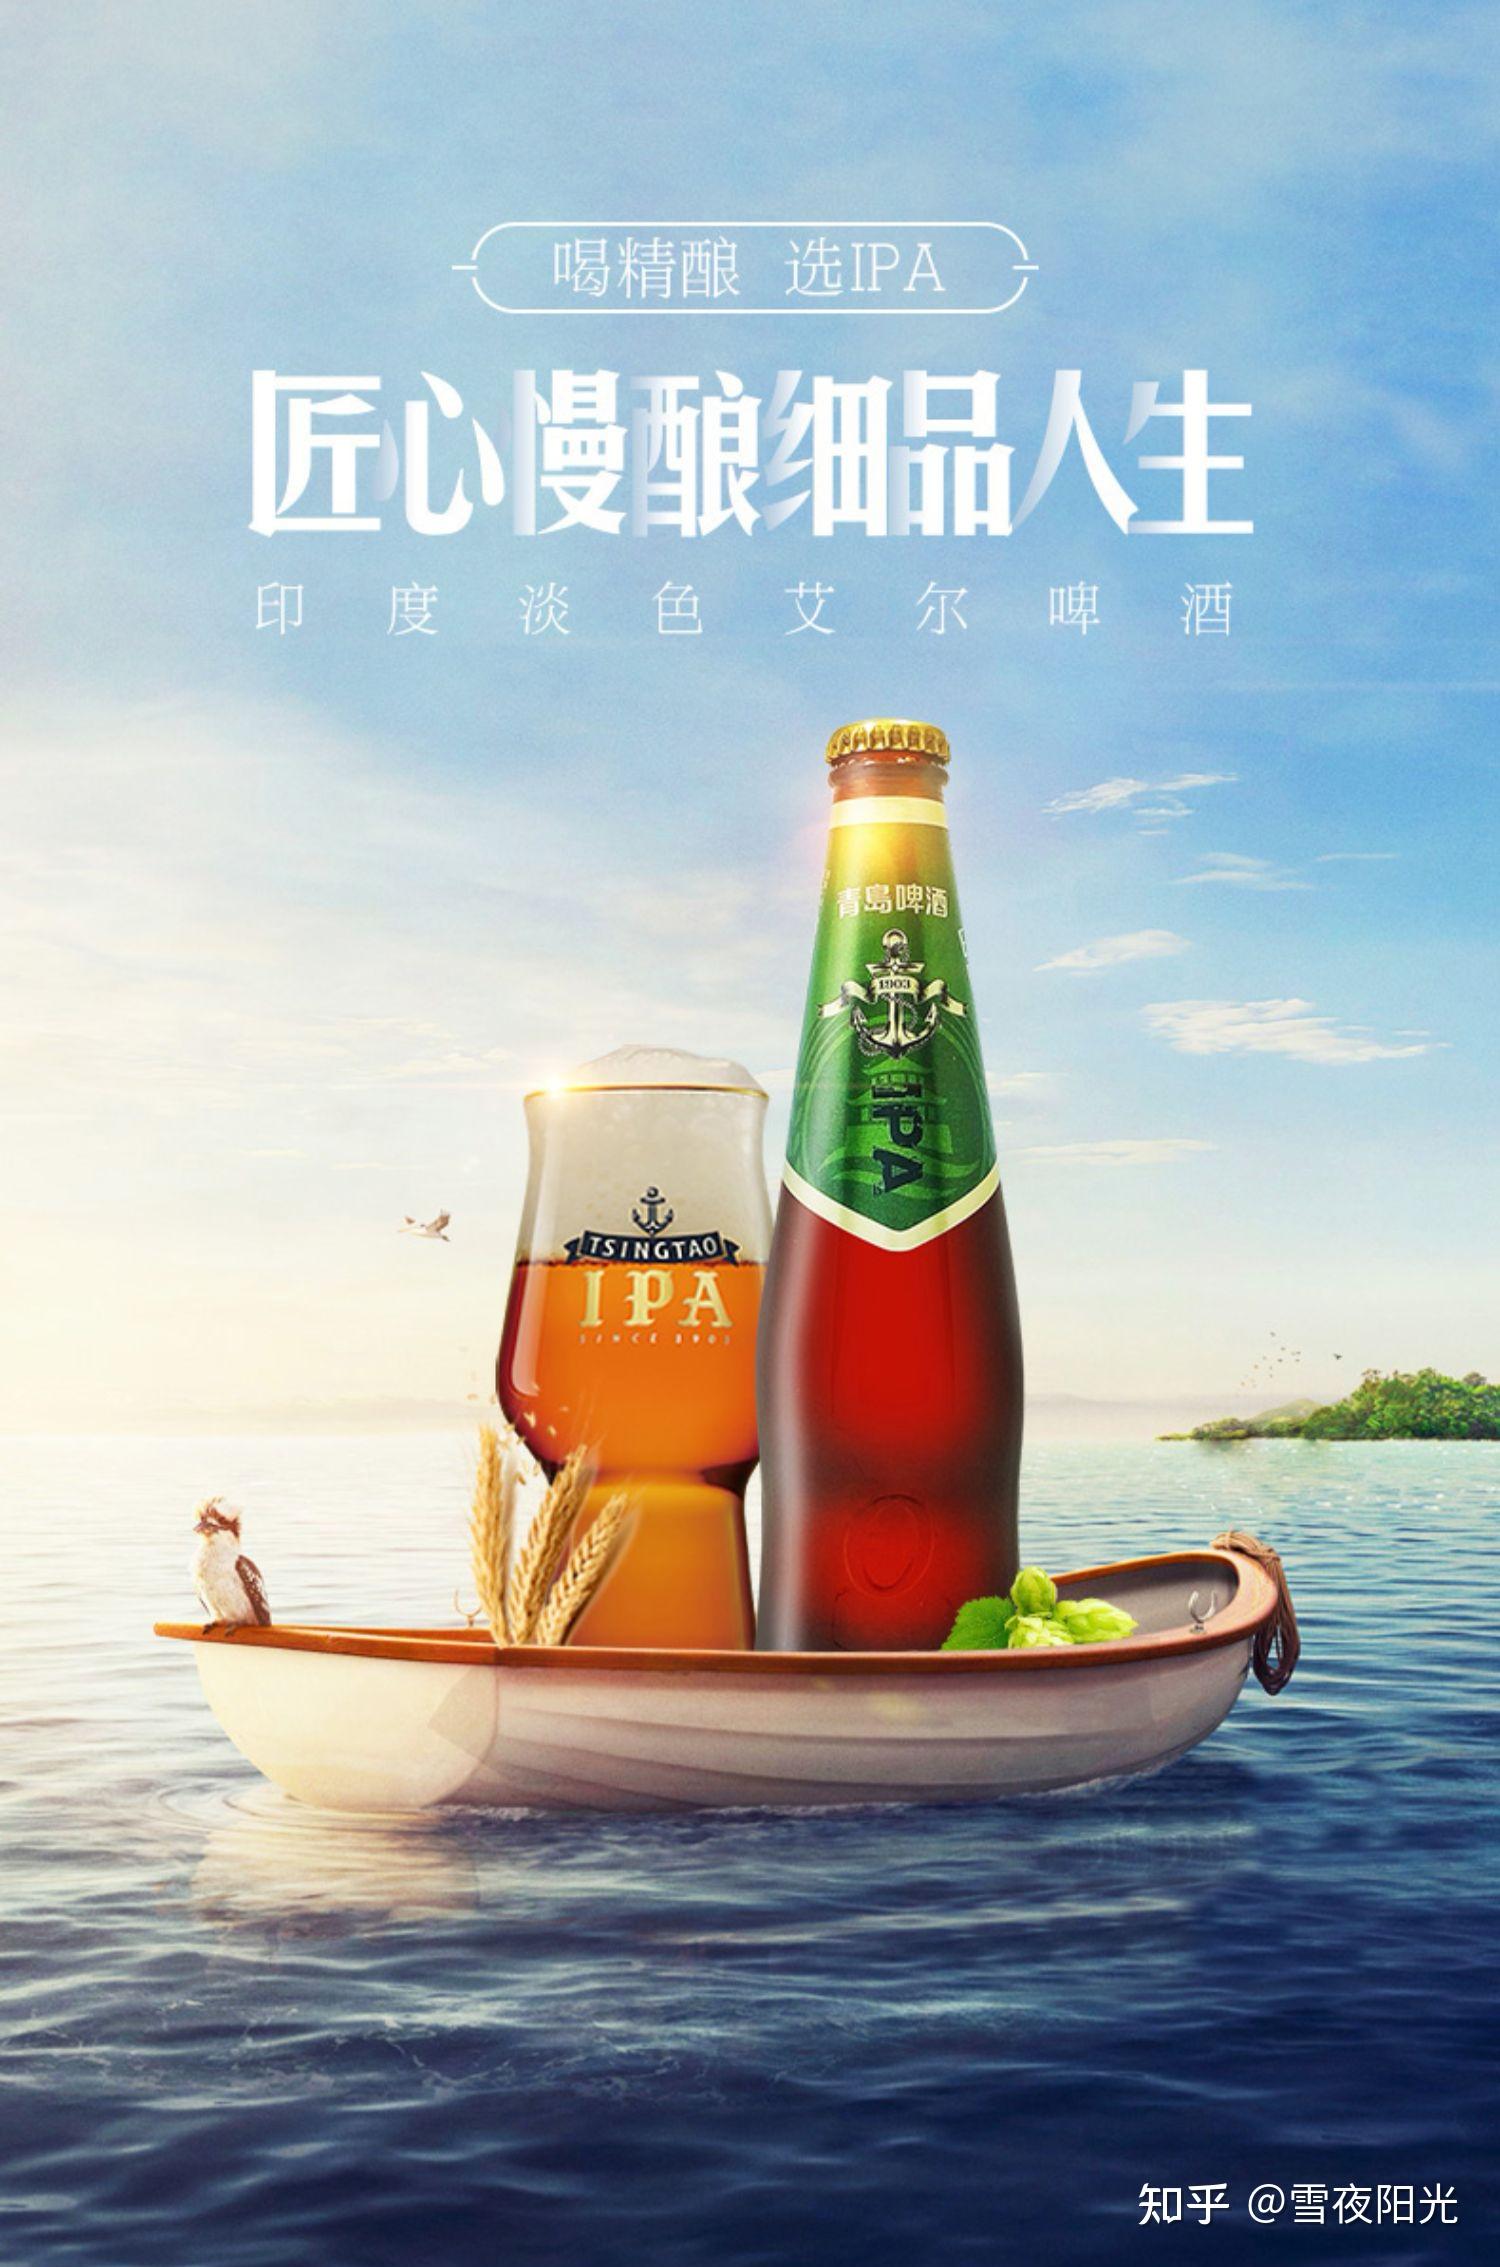 让世界品味中国“潮” 青岛啤酒经典1903复古装引爆潮流尖货---山东财经网